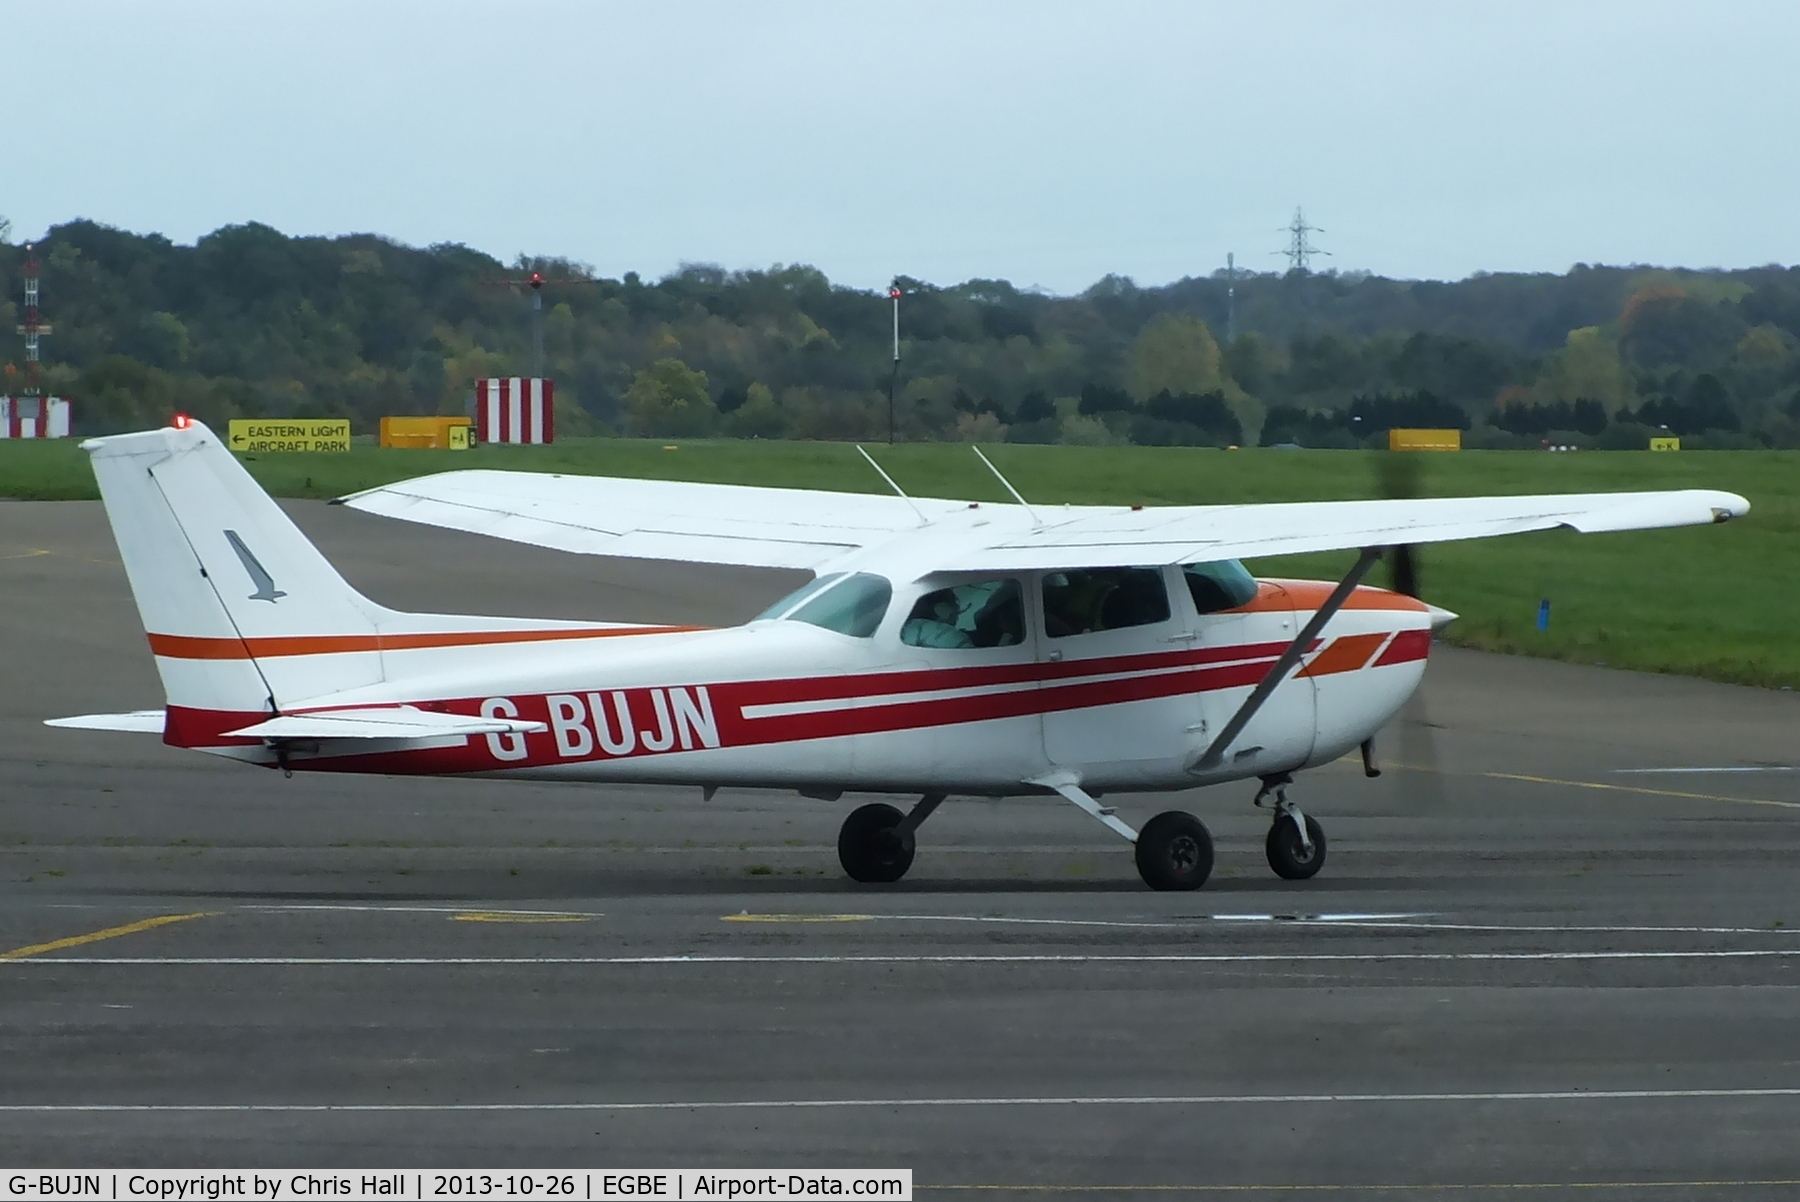 G-BUJN, 1979 Cessna 172N C/N 172-72713, Warwickshire Aviation Ltd